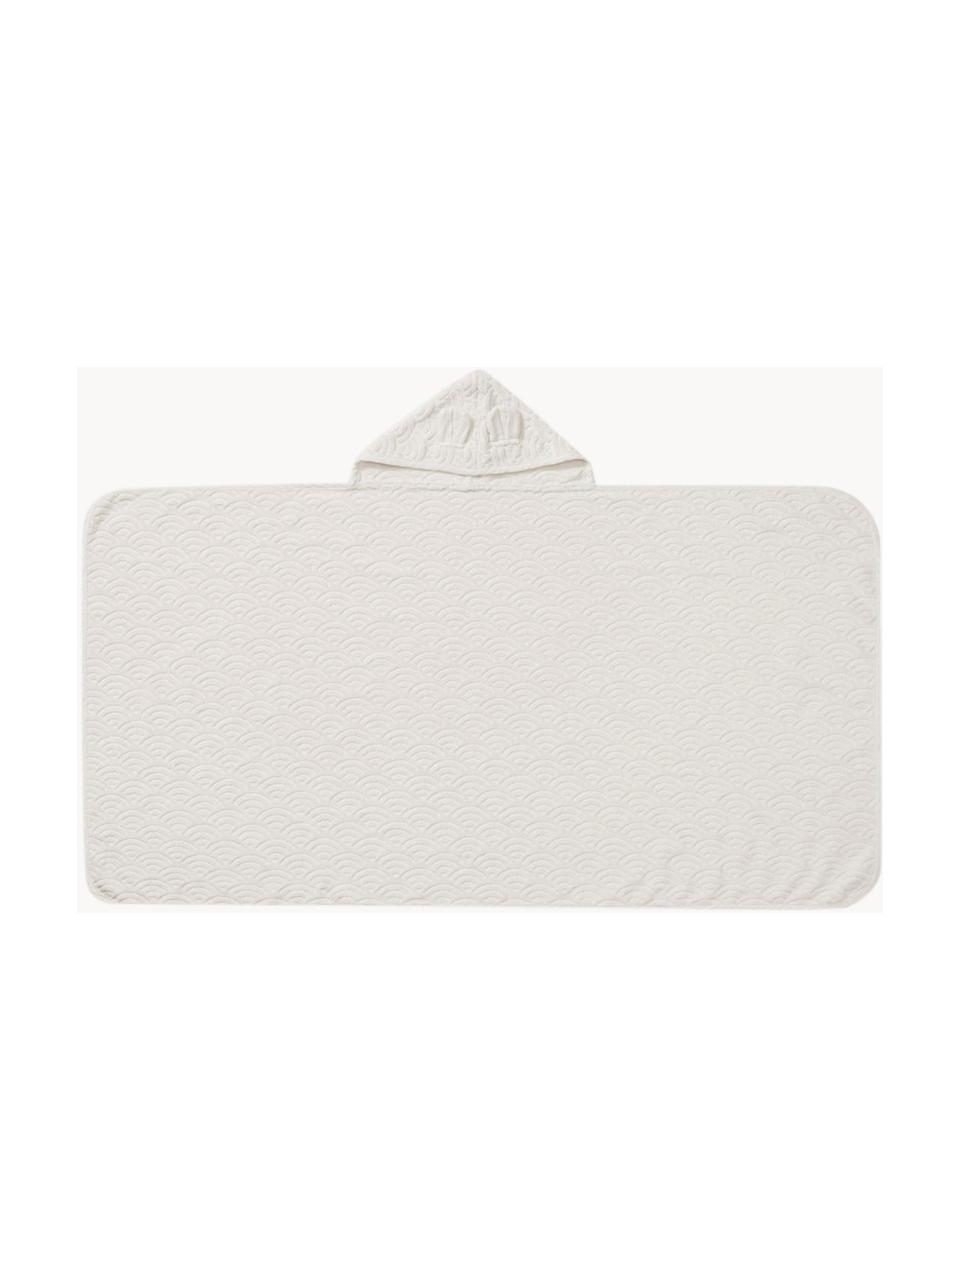 Toalla capa de algodón ecológico Wave, 100% algodón ecológico con certificado GOTS, Blanco Off White, An 70 x L 130 cm